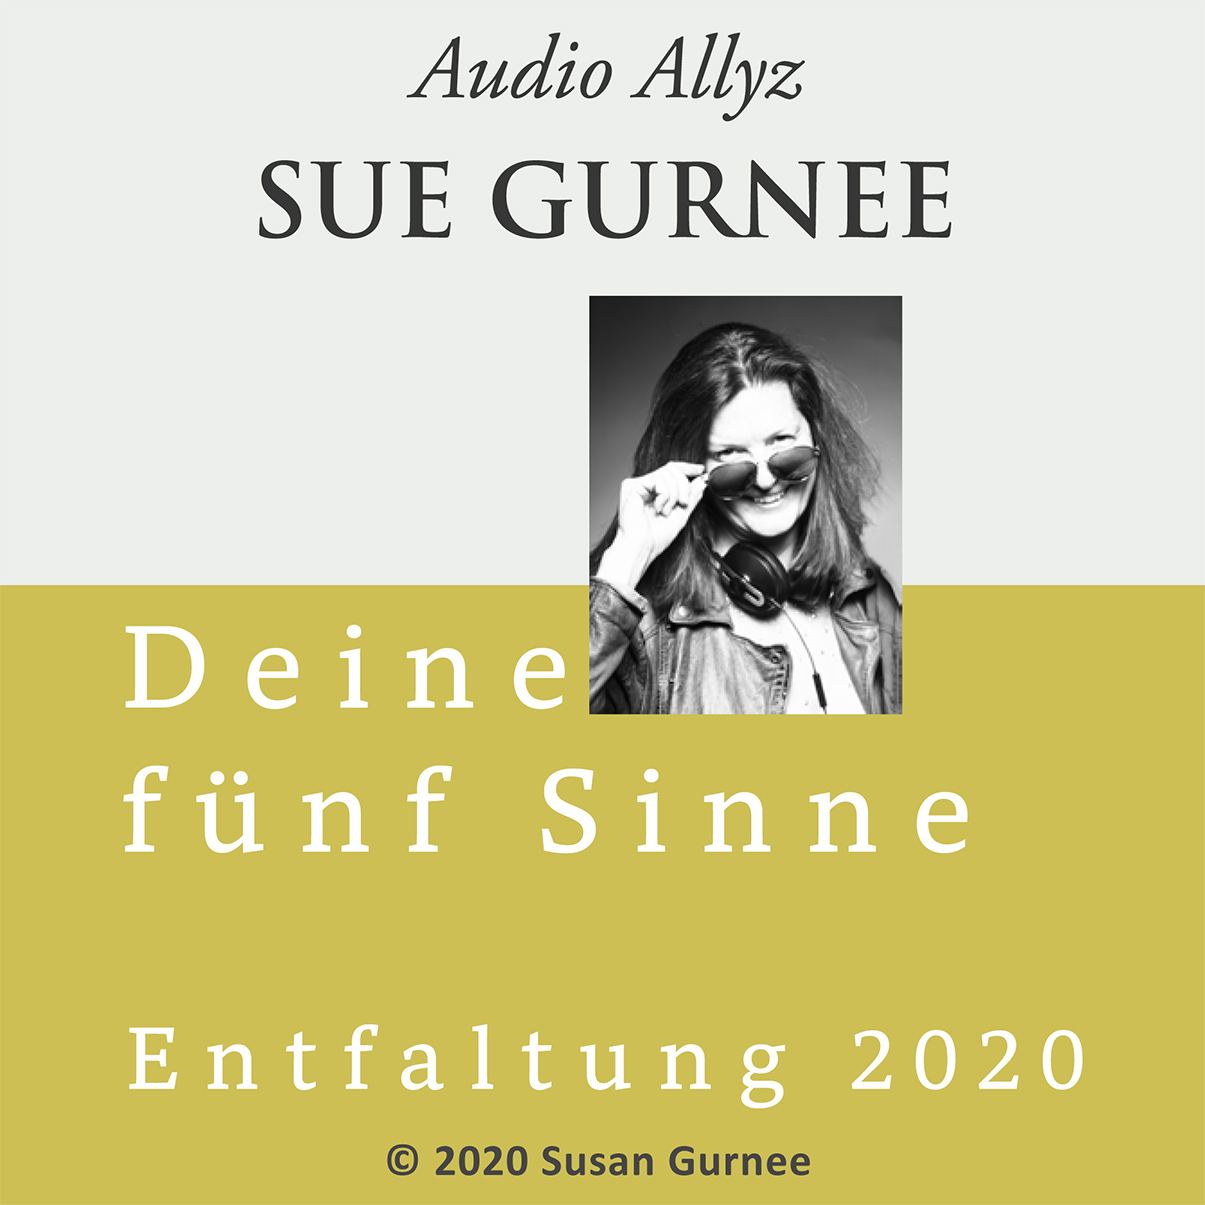 Audio Allyz Sue Gurnee - Entfaltung 2020 - Deine Fünf Sinne